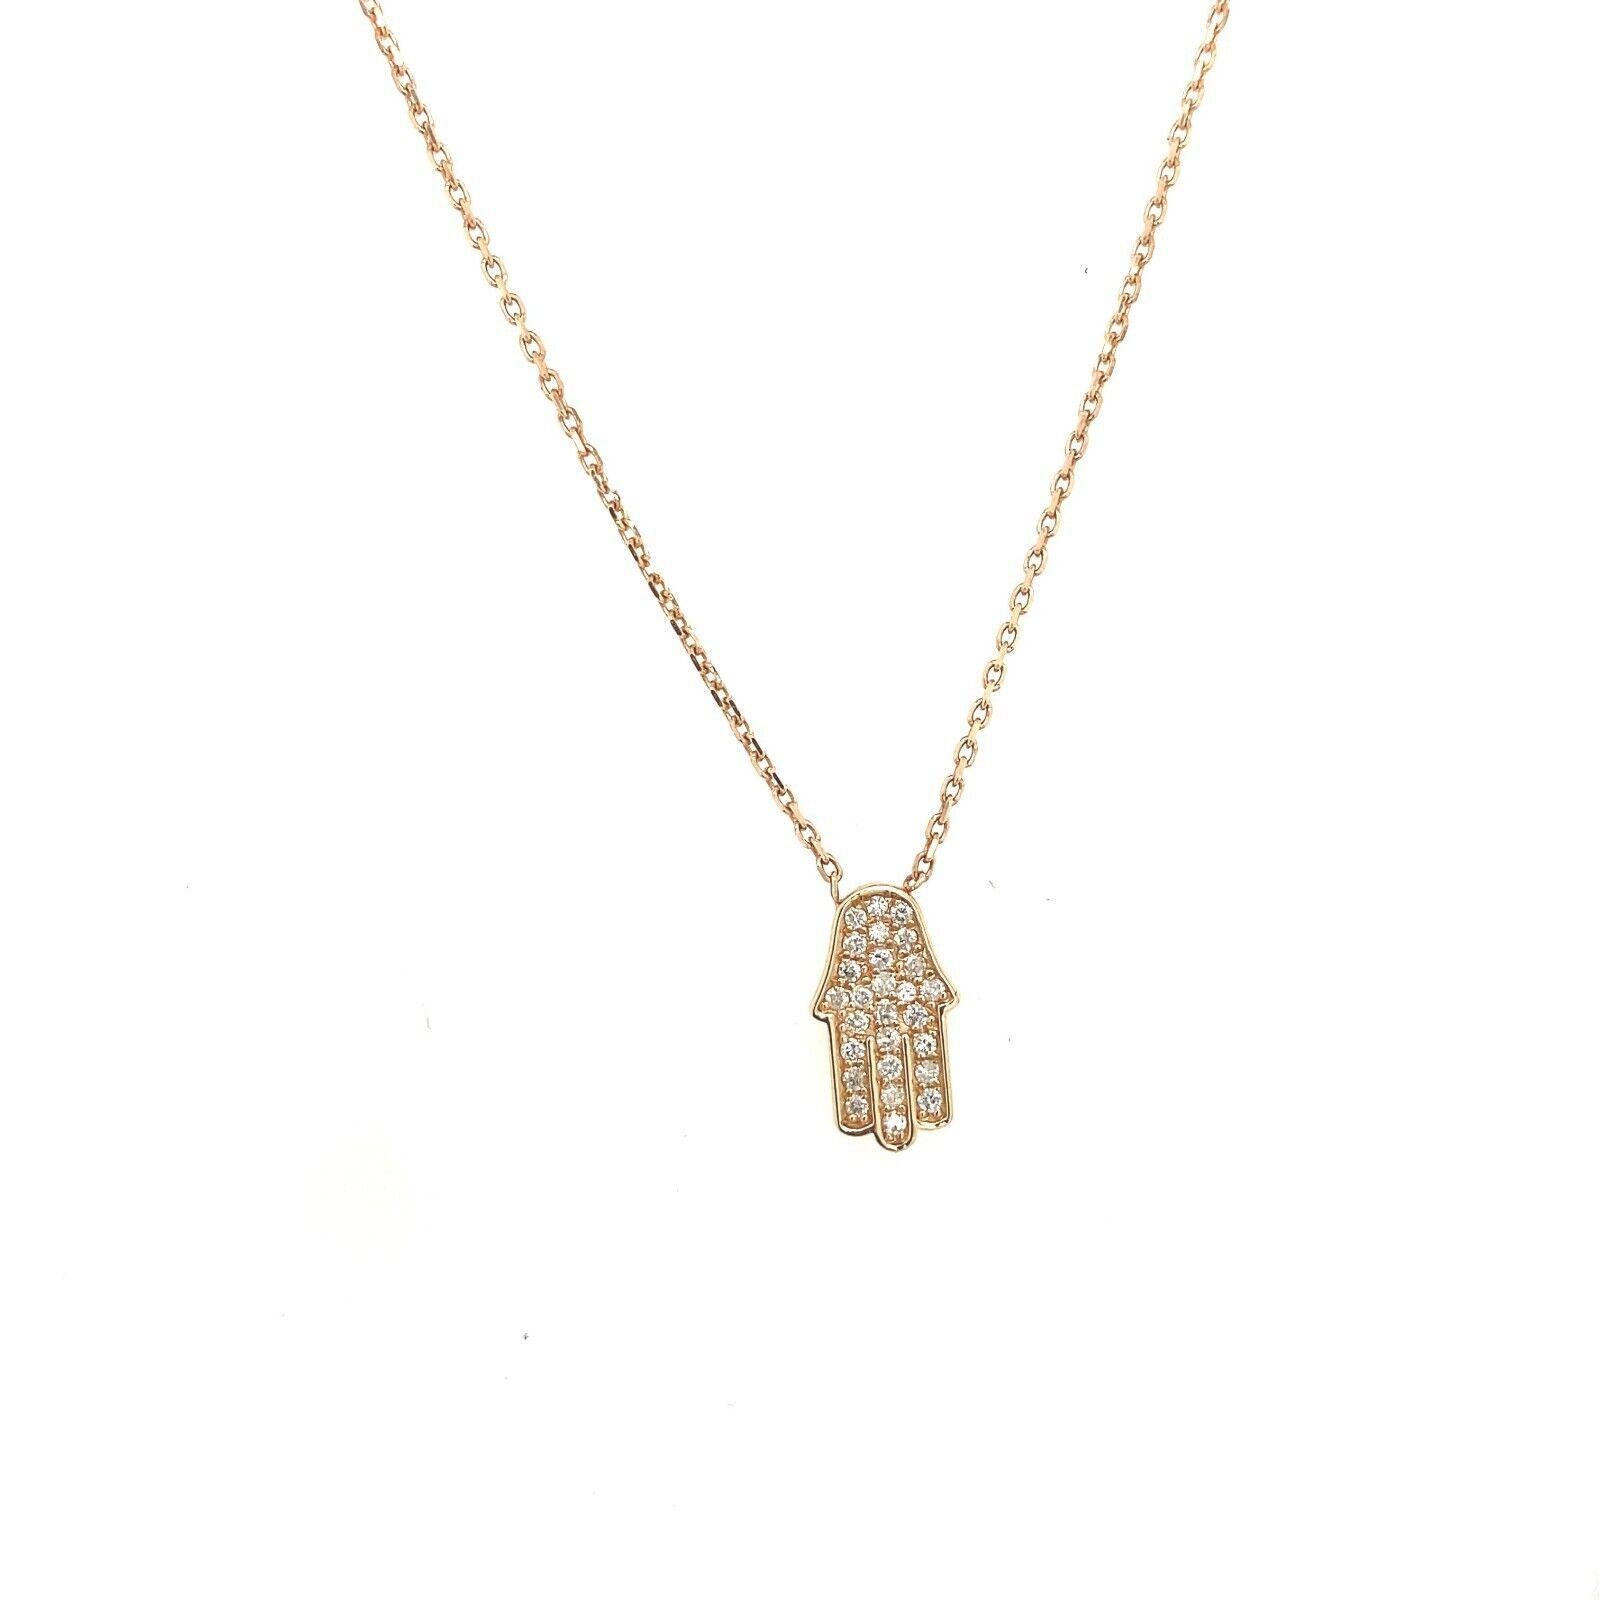 Collier Hamza en or rose 14ct serti de diamants sur une chaîne ajustable de 18ct

Cette élégante parure de collier hamza est ornée de diamants ronds de taille brillant de 0,14ct. Ce collier est le cadeau idéal  pour un anniversaire ou toute autre